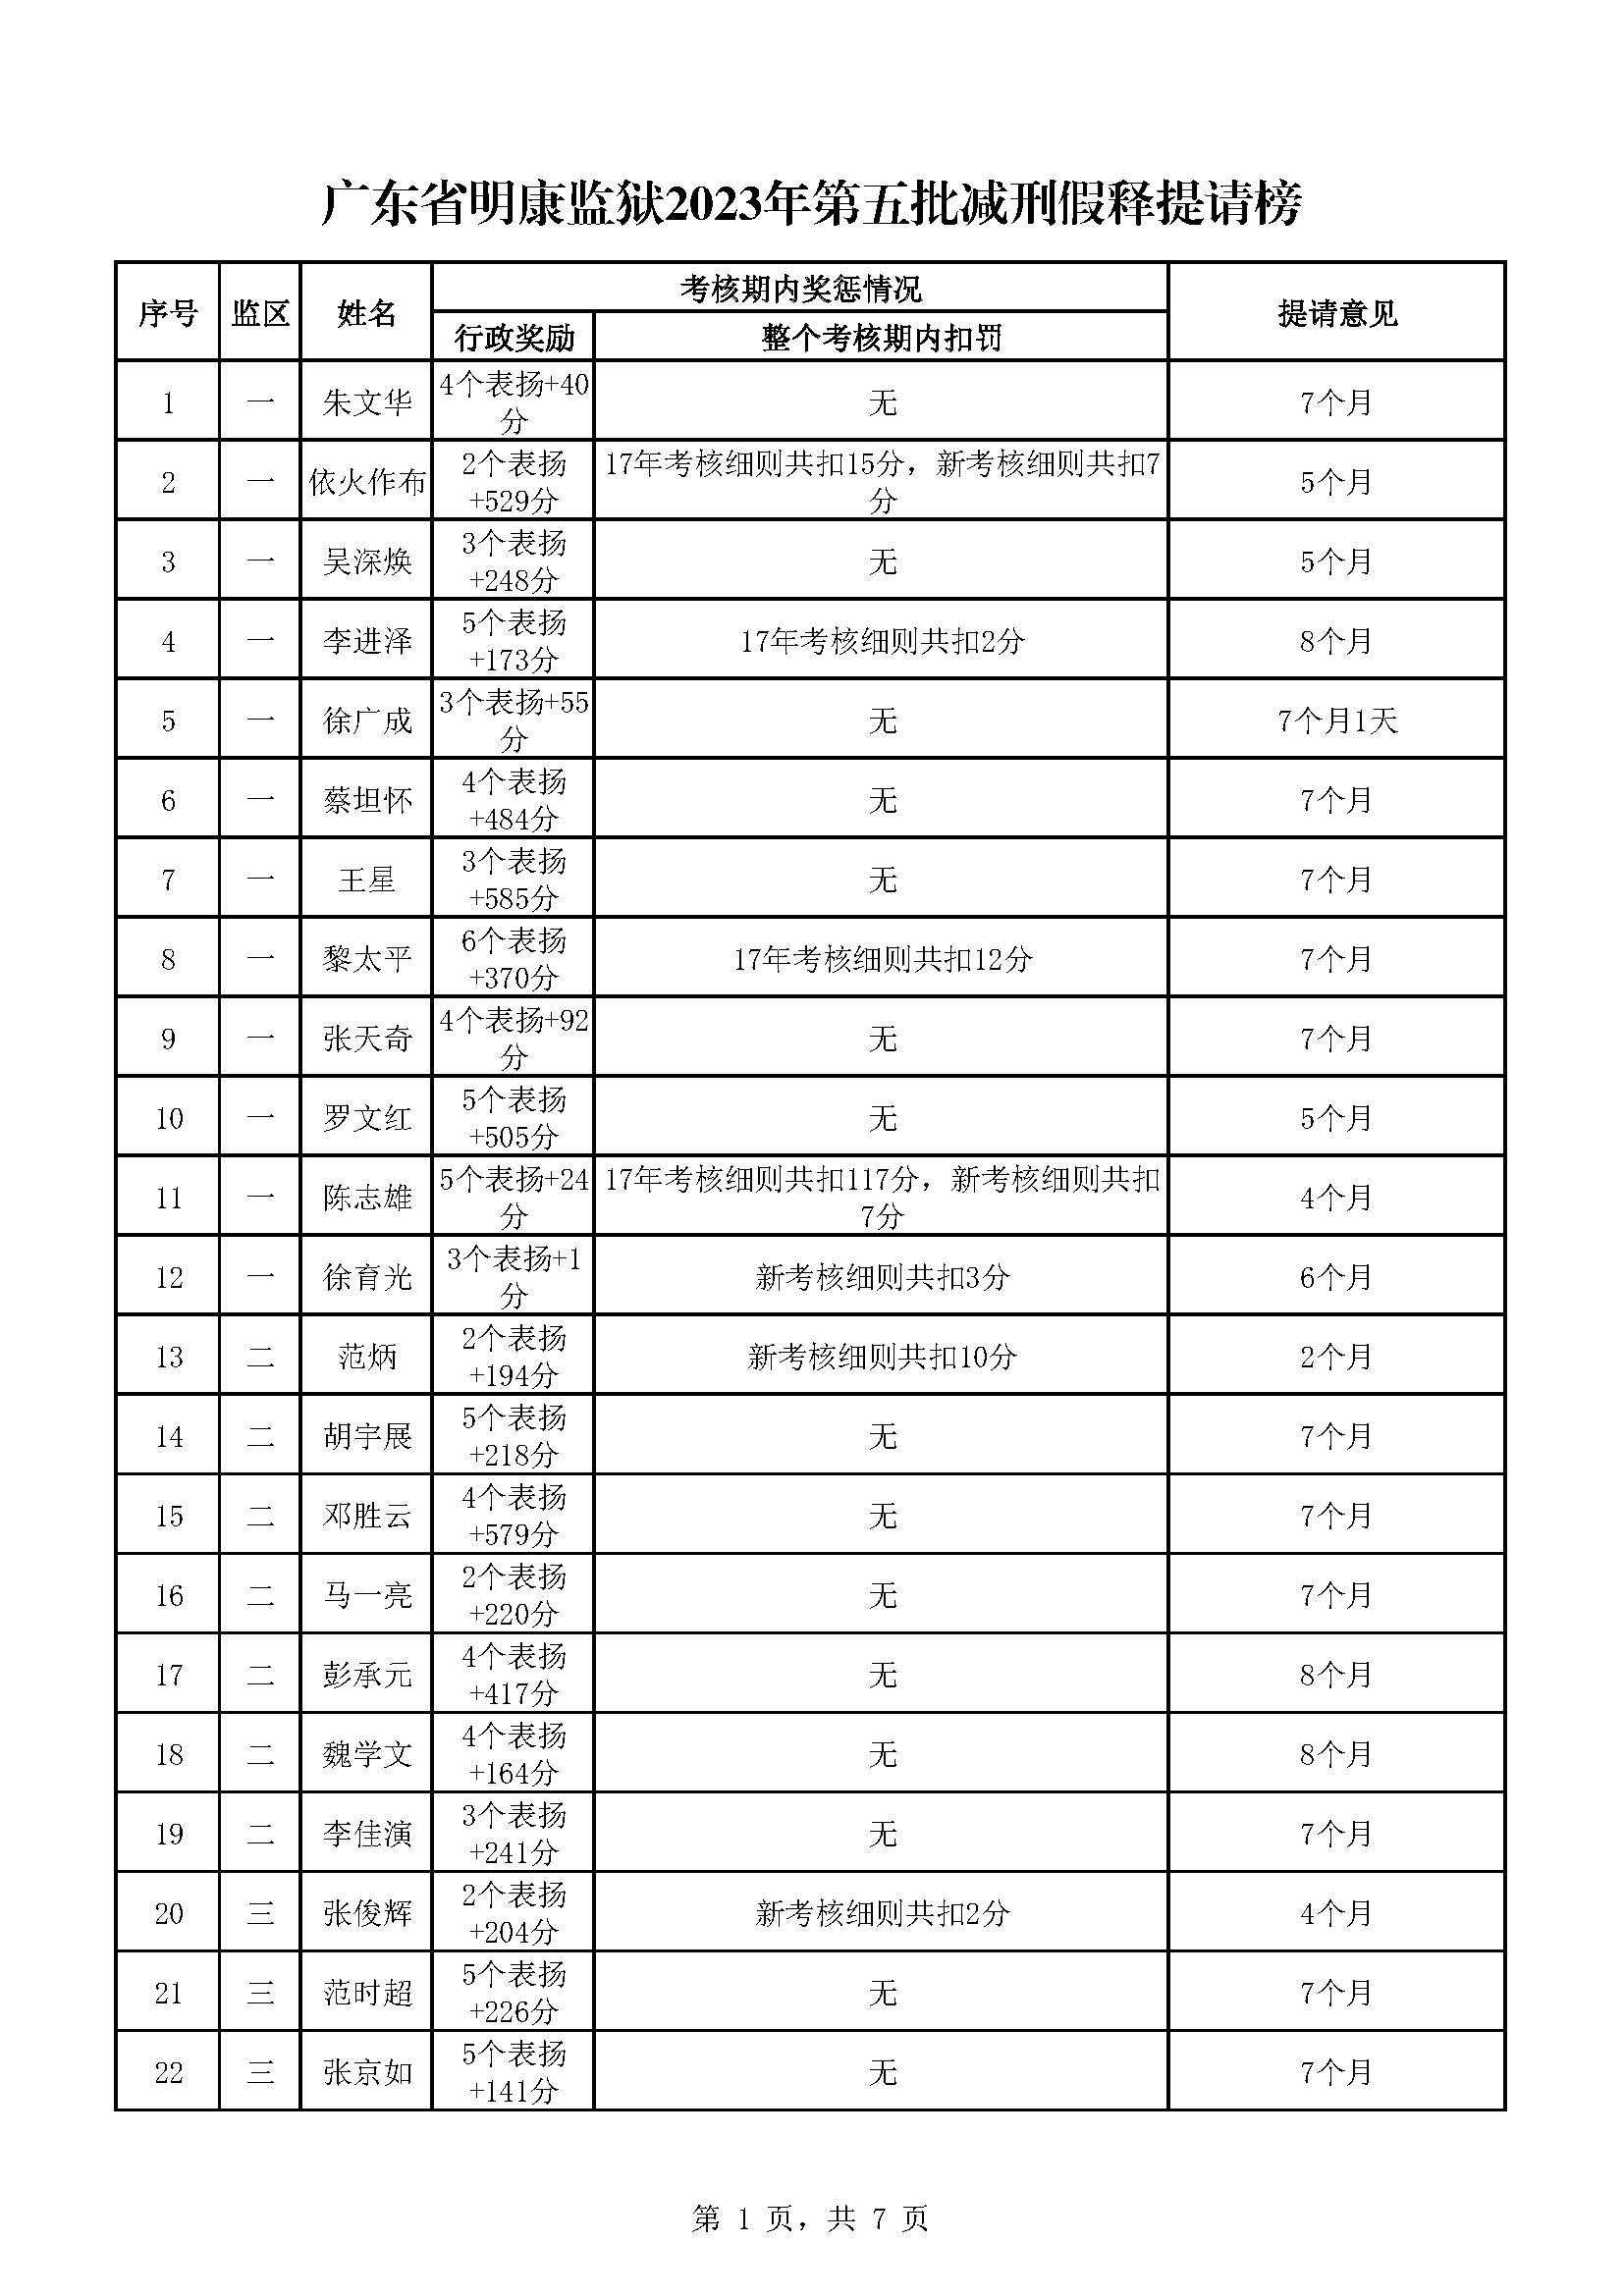 174.广东省明康监狱2023年第五批减刑假释提请榜_页面_1.jpg